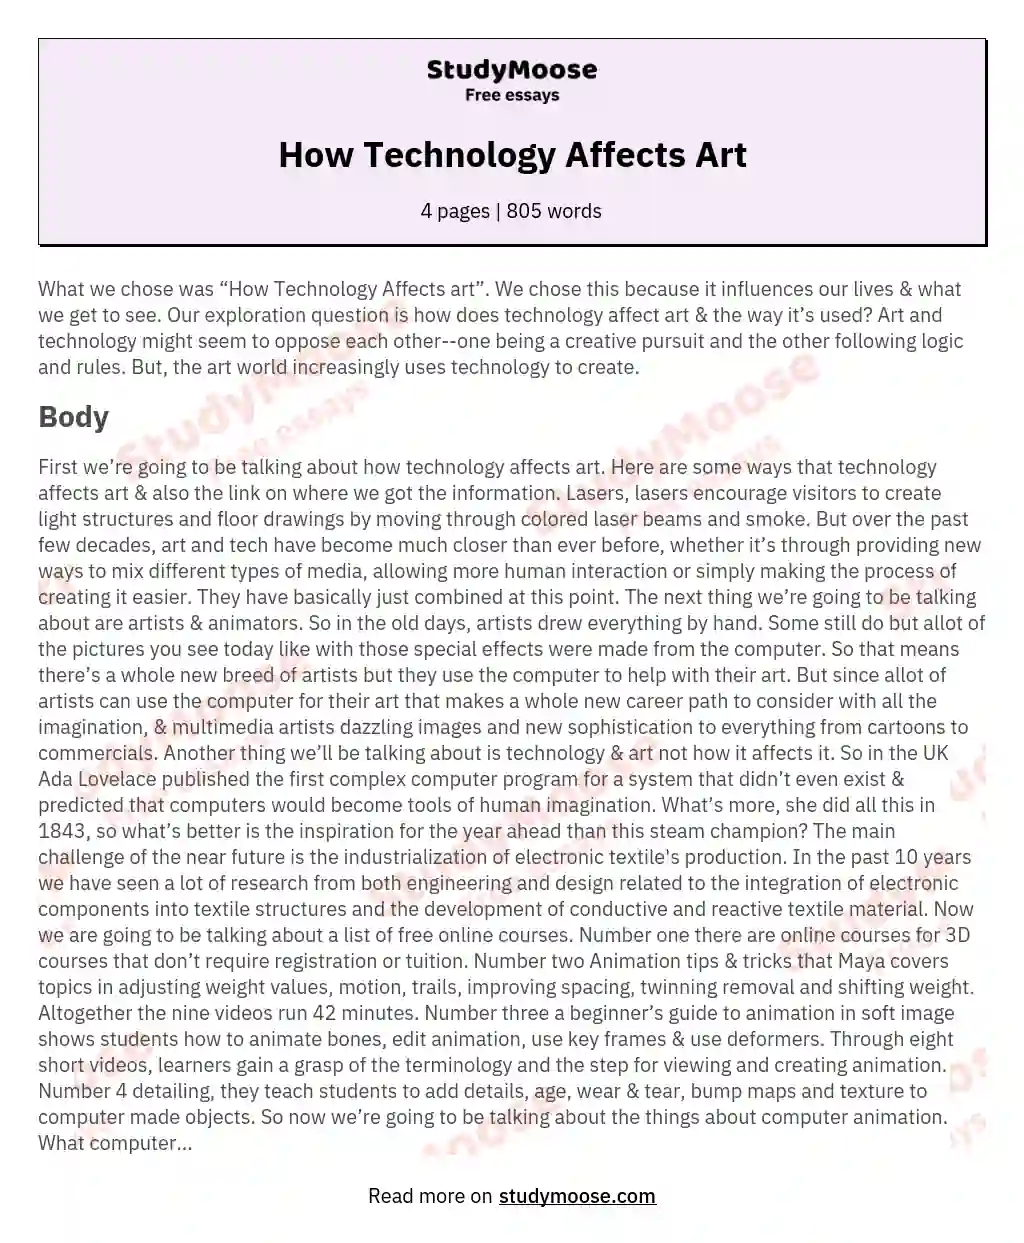 How Technology Affects Art essay